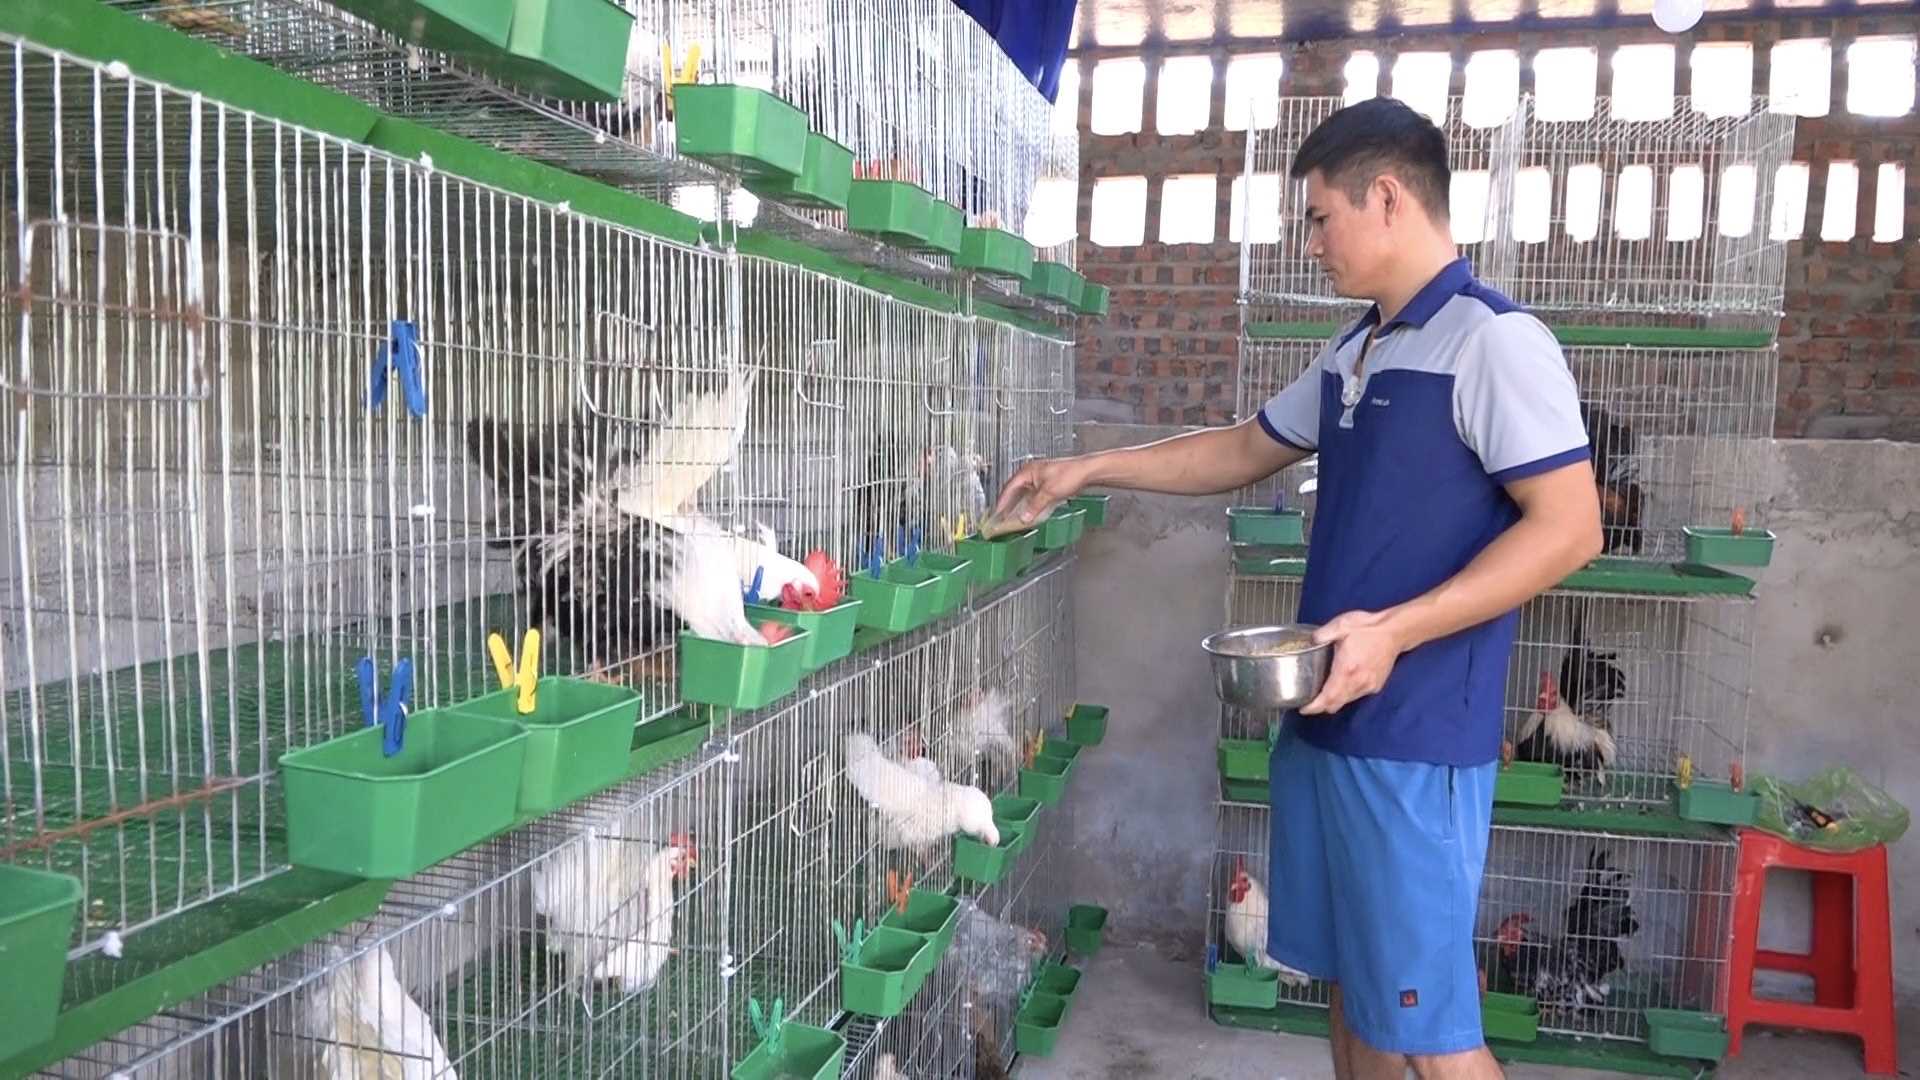 Nuôi thứ gà be bé xuất xứ Thái Lan, anh nông dân Quảng Ninh cứ bán một cặp bỏ túi 300.000-450.000 đồng - Ảnh 1.